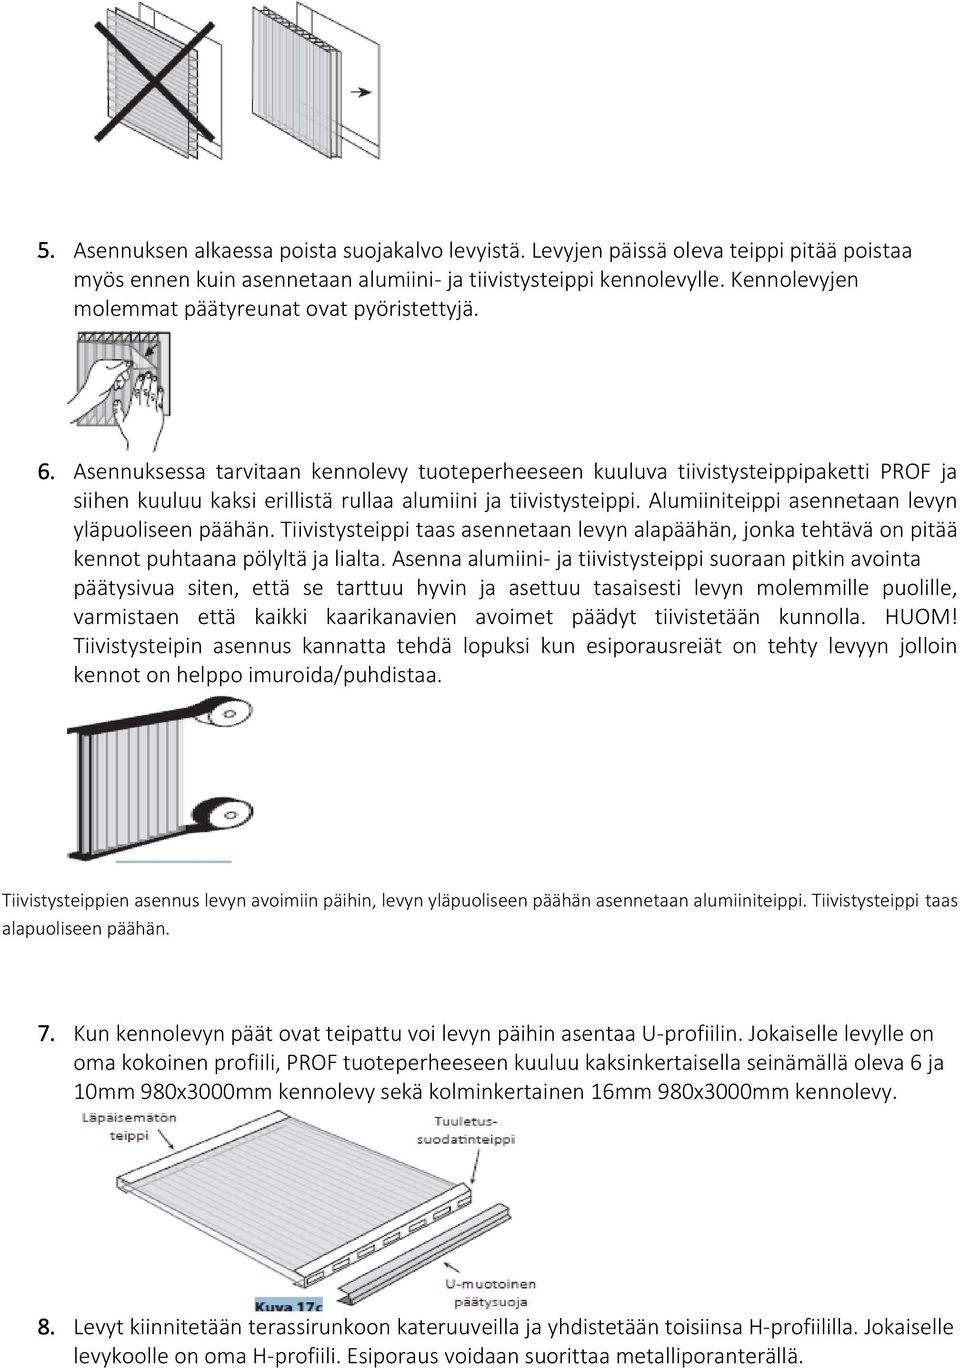 Asennusohje PROF kennolevylle - PDF Ilmainen lataus